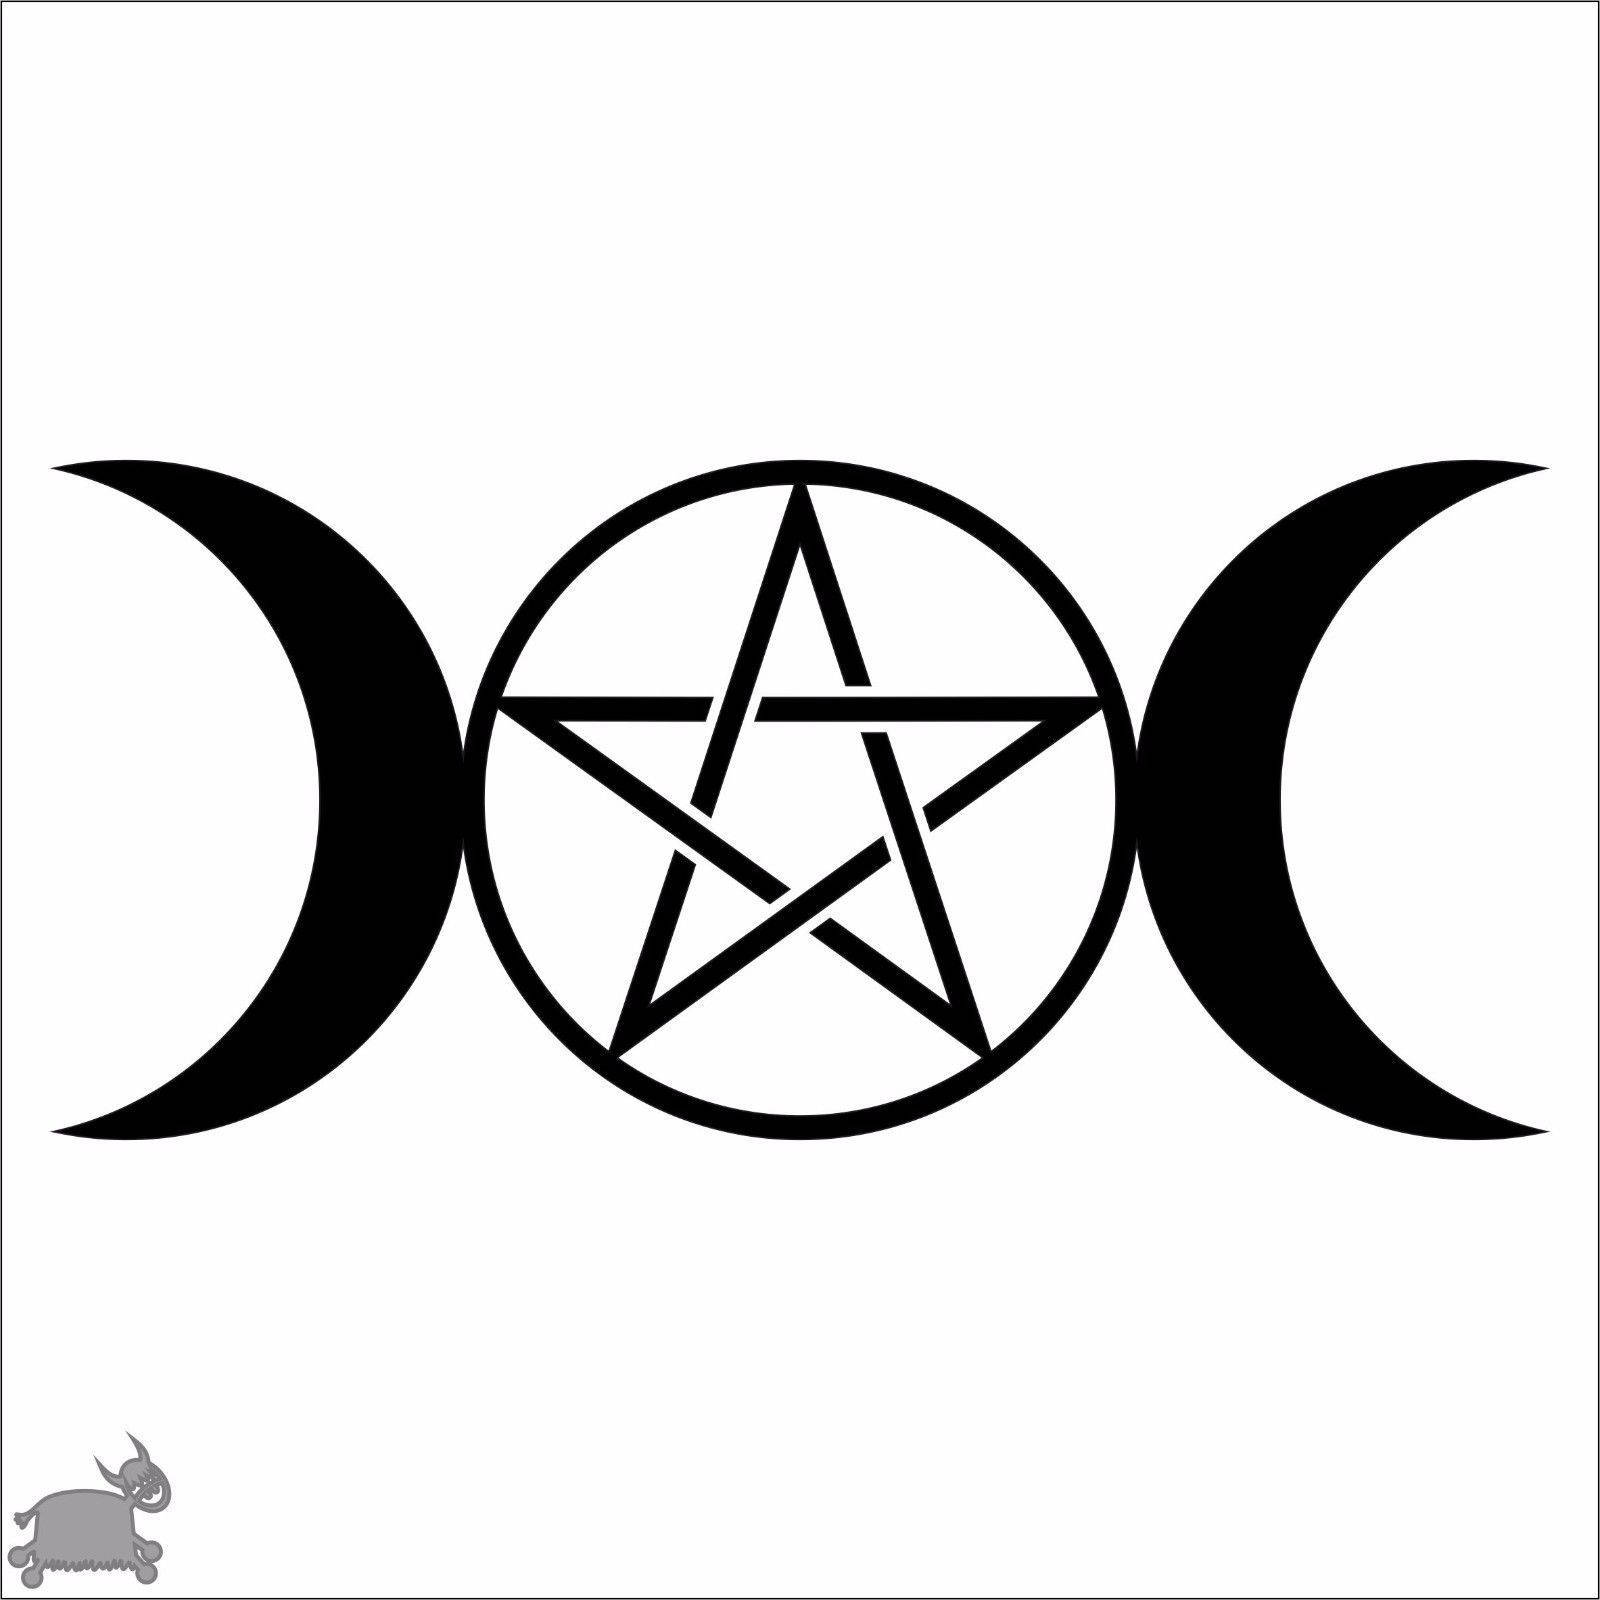 Pentagram With Crescent Moons Wallpaper